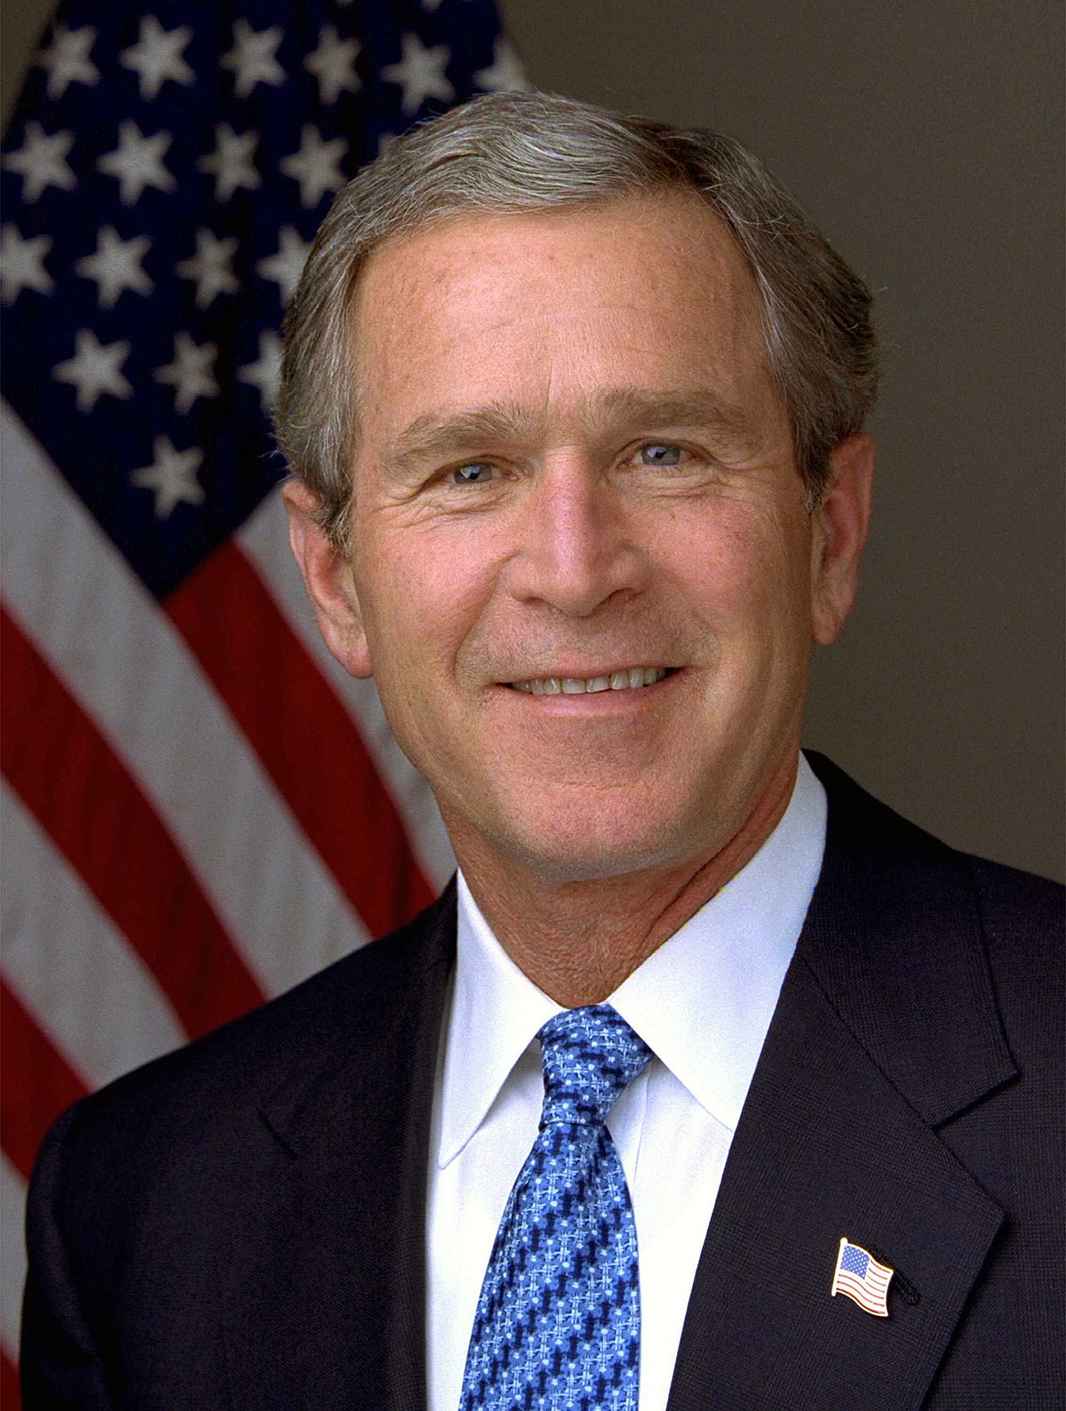 George_W_Bush_9ofdiamonds